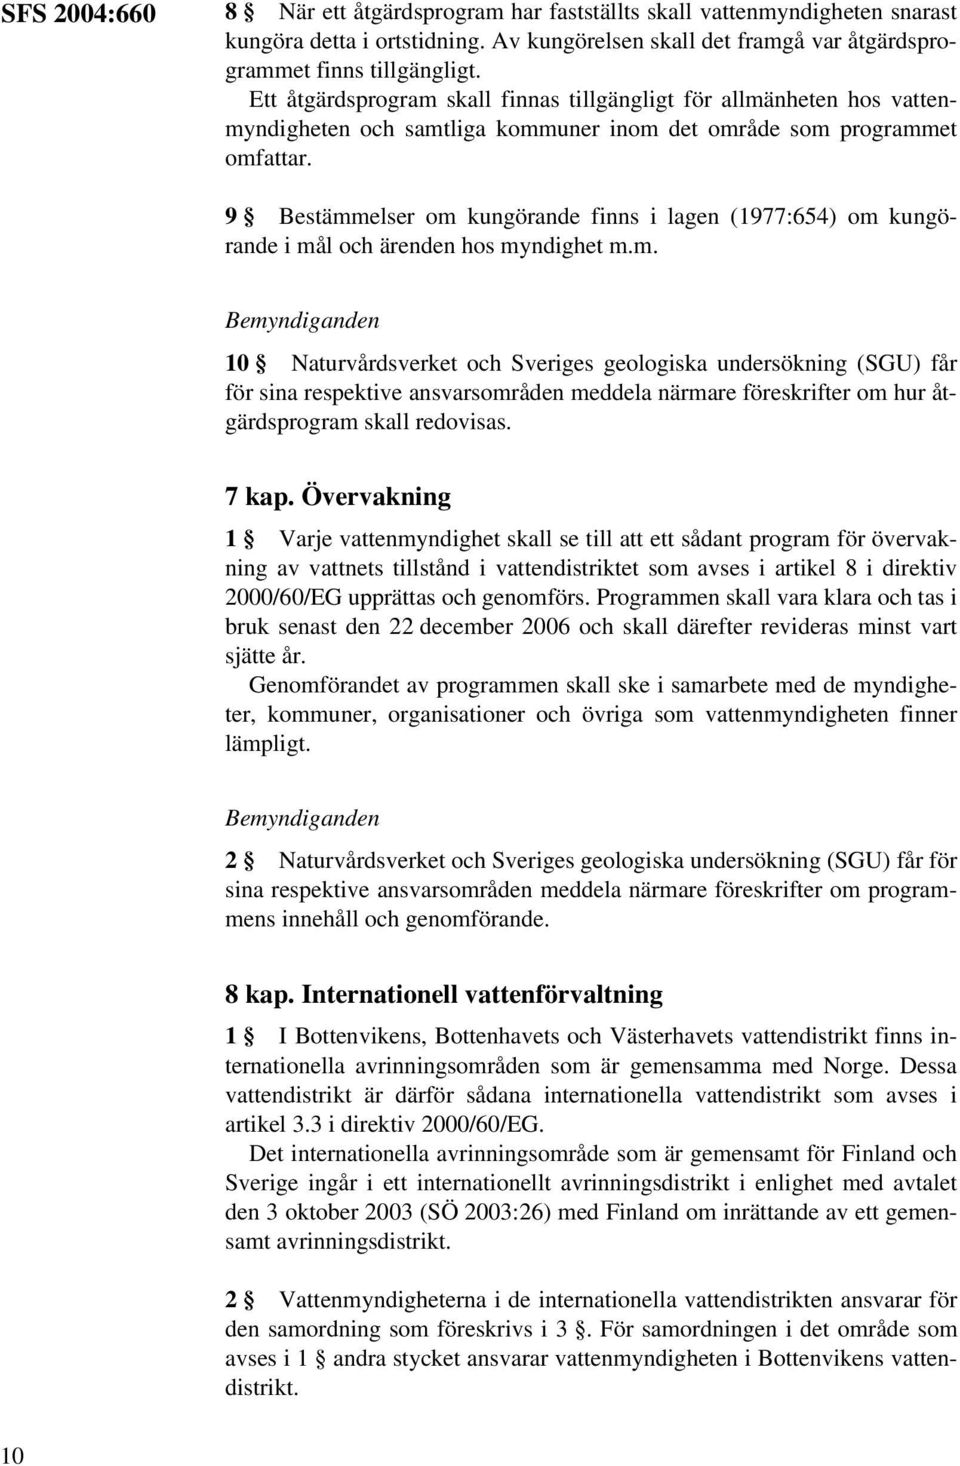 9 Bestämmelser om kungörande finns i lagen (1977:654) om kungörande i mål och ärenden hos myndighet m.m. Bemyndiganden 10 Naturvårdsverket och Sveriges geologiska undersökning (SGU) får för sina respektive ansvarsområden meddela närmare föreskrifter om hur åtgärdsprogram skall redovisas.